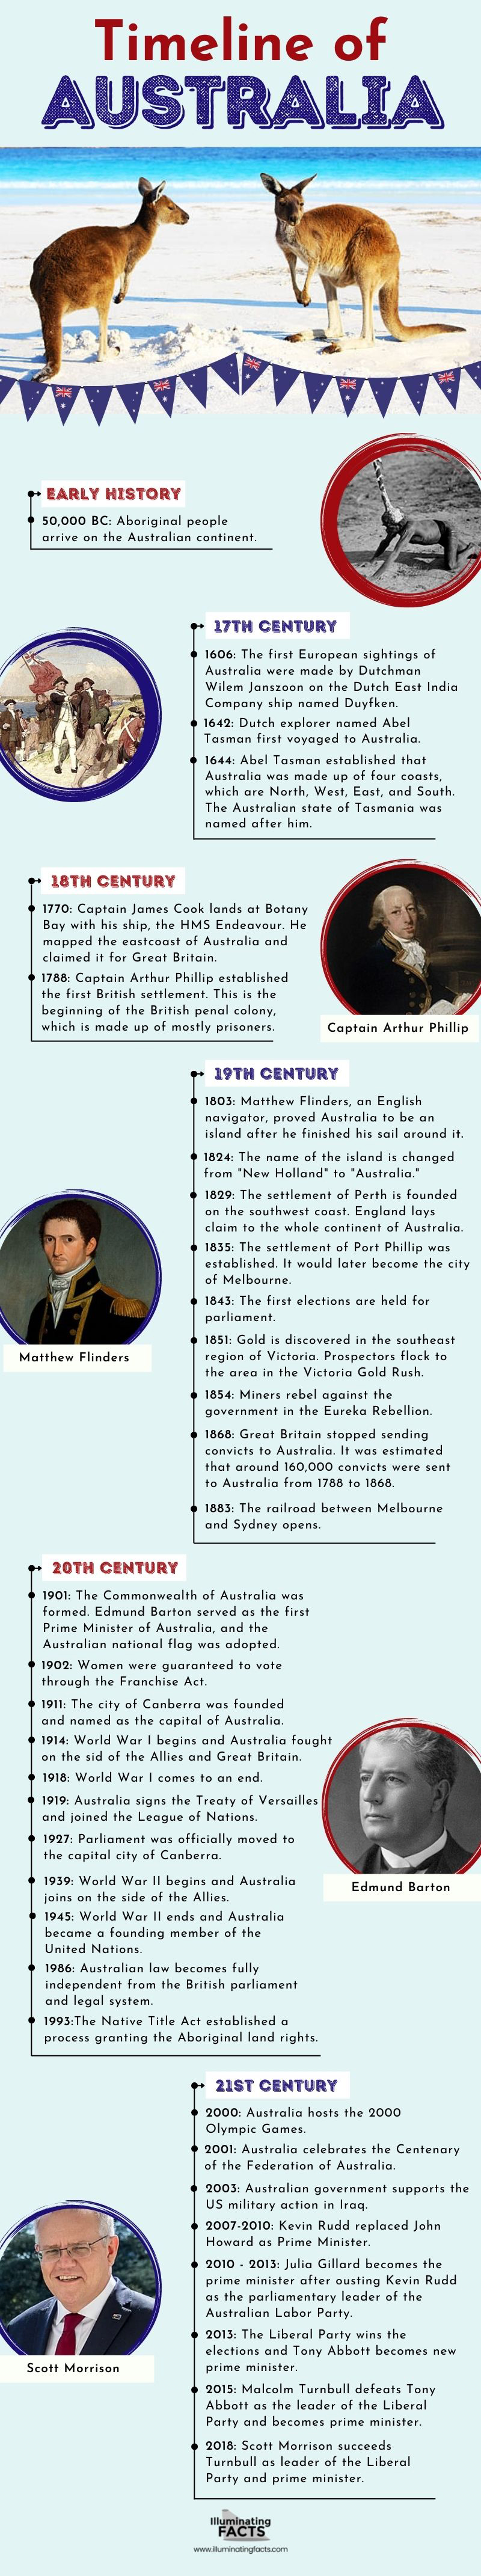 Timeline of Australia